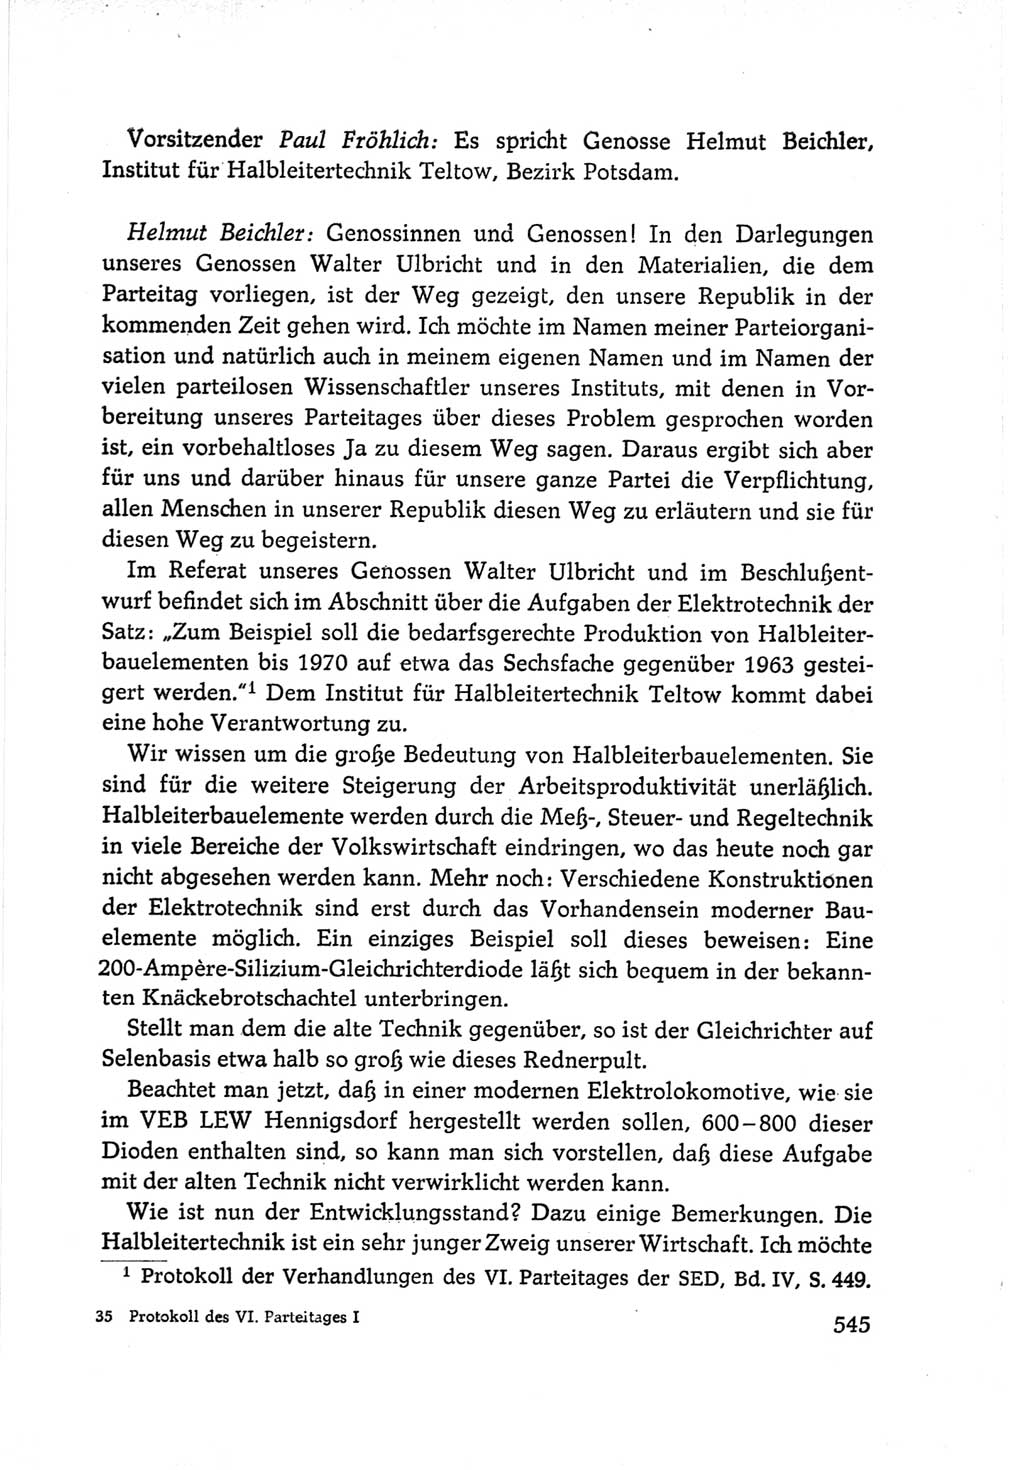 Protokoll der Verhandlungen des Ⅵ. Parteitages der Sozialistischen Einheitspartei Deutschlands (SED) [Deutsche Demokratische Republik (DDR)] 1963, Band Ⅰ, Seite 545 (Prot. Verh. Ⅵ. PT SED DDR 1963, Bd. Ⅰ, S. 545)